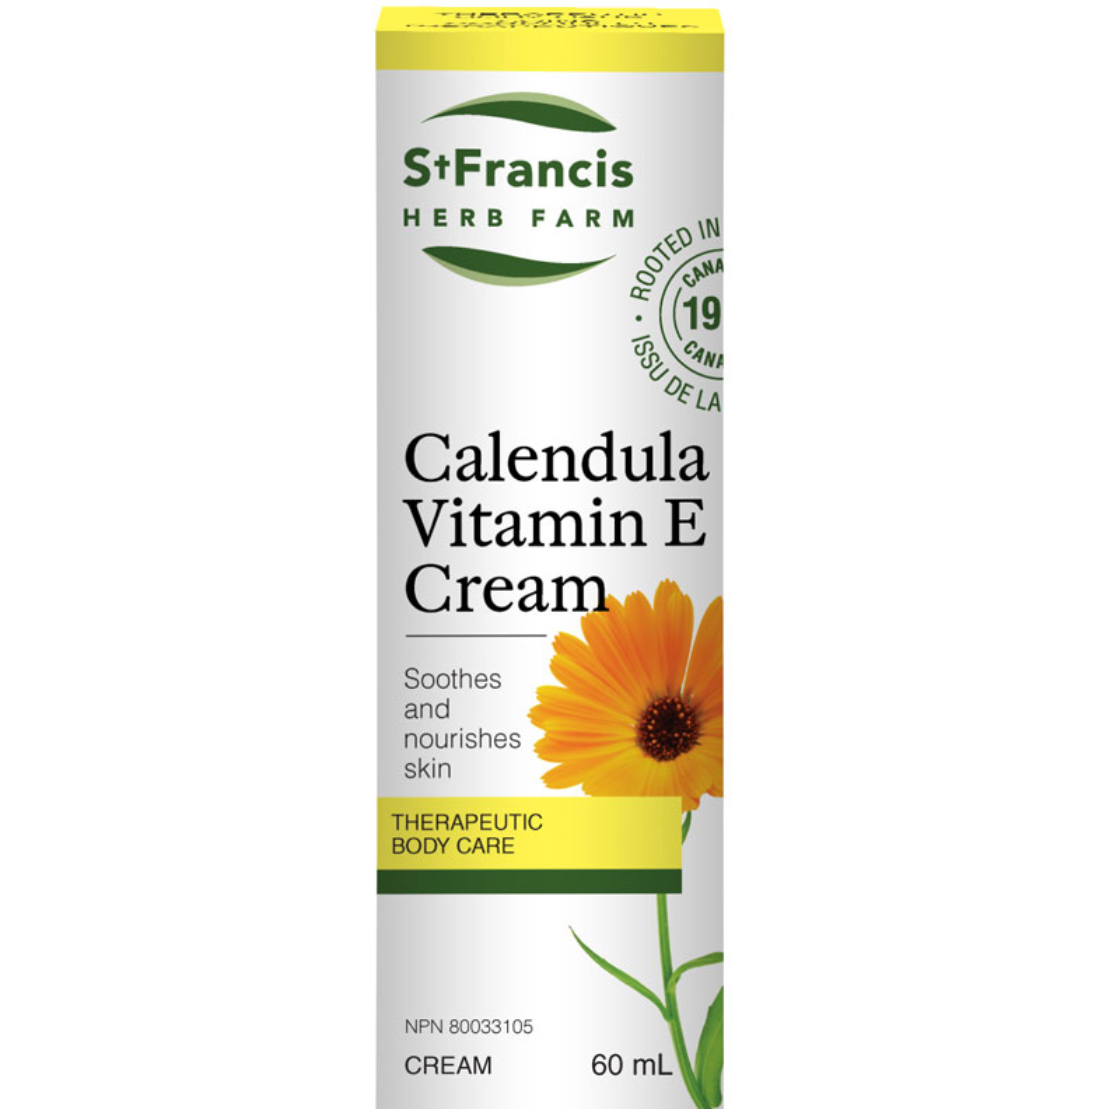 Calendula Vitamin E Cream